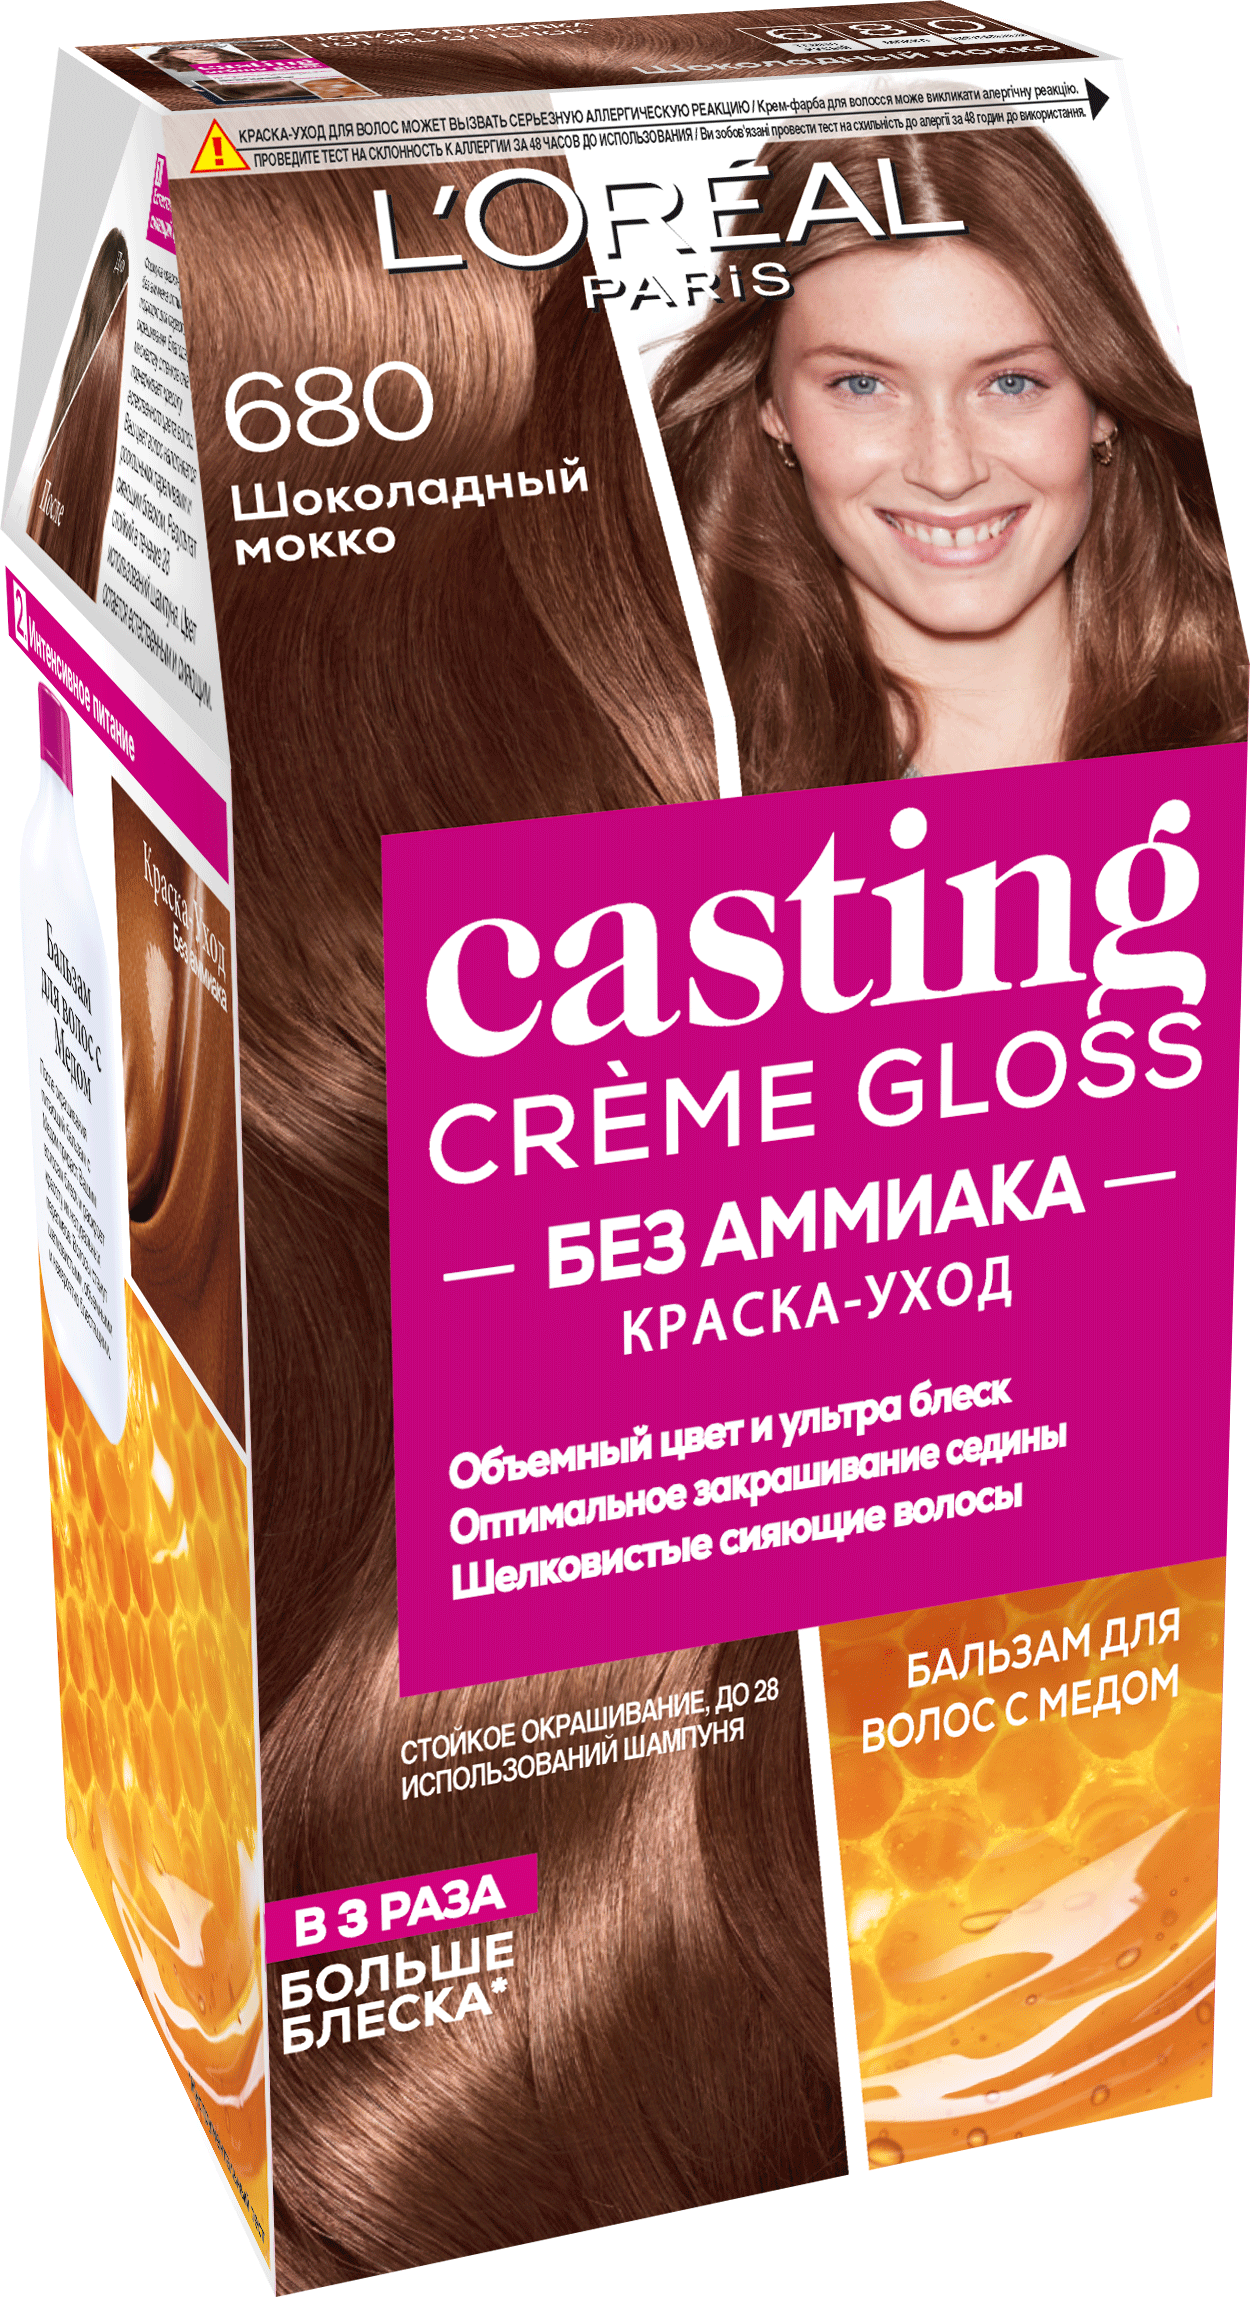 L'Oreal Paris Стойкая краска-уход для волос "Casting Creme Gloss" без аммиака, оттенок 680, Шоколадный Мокко